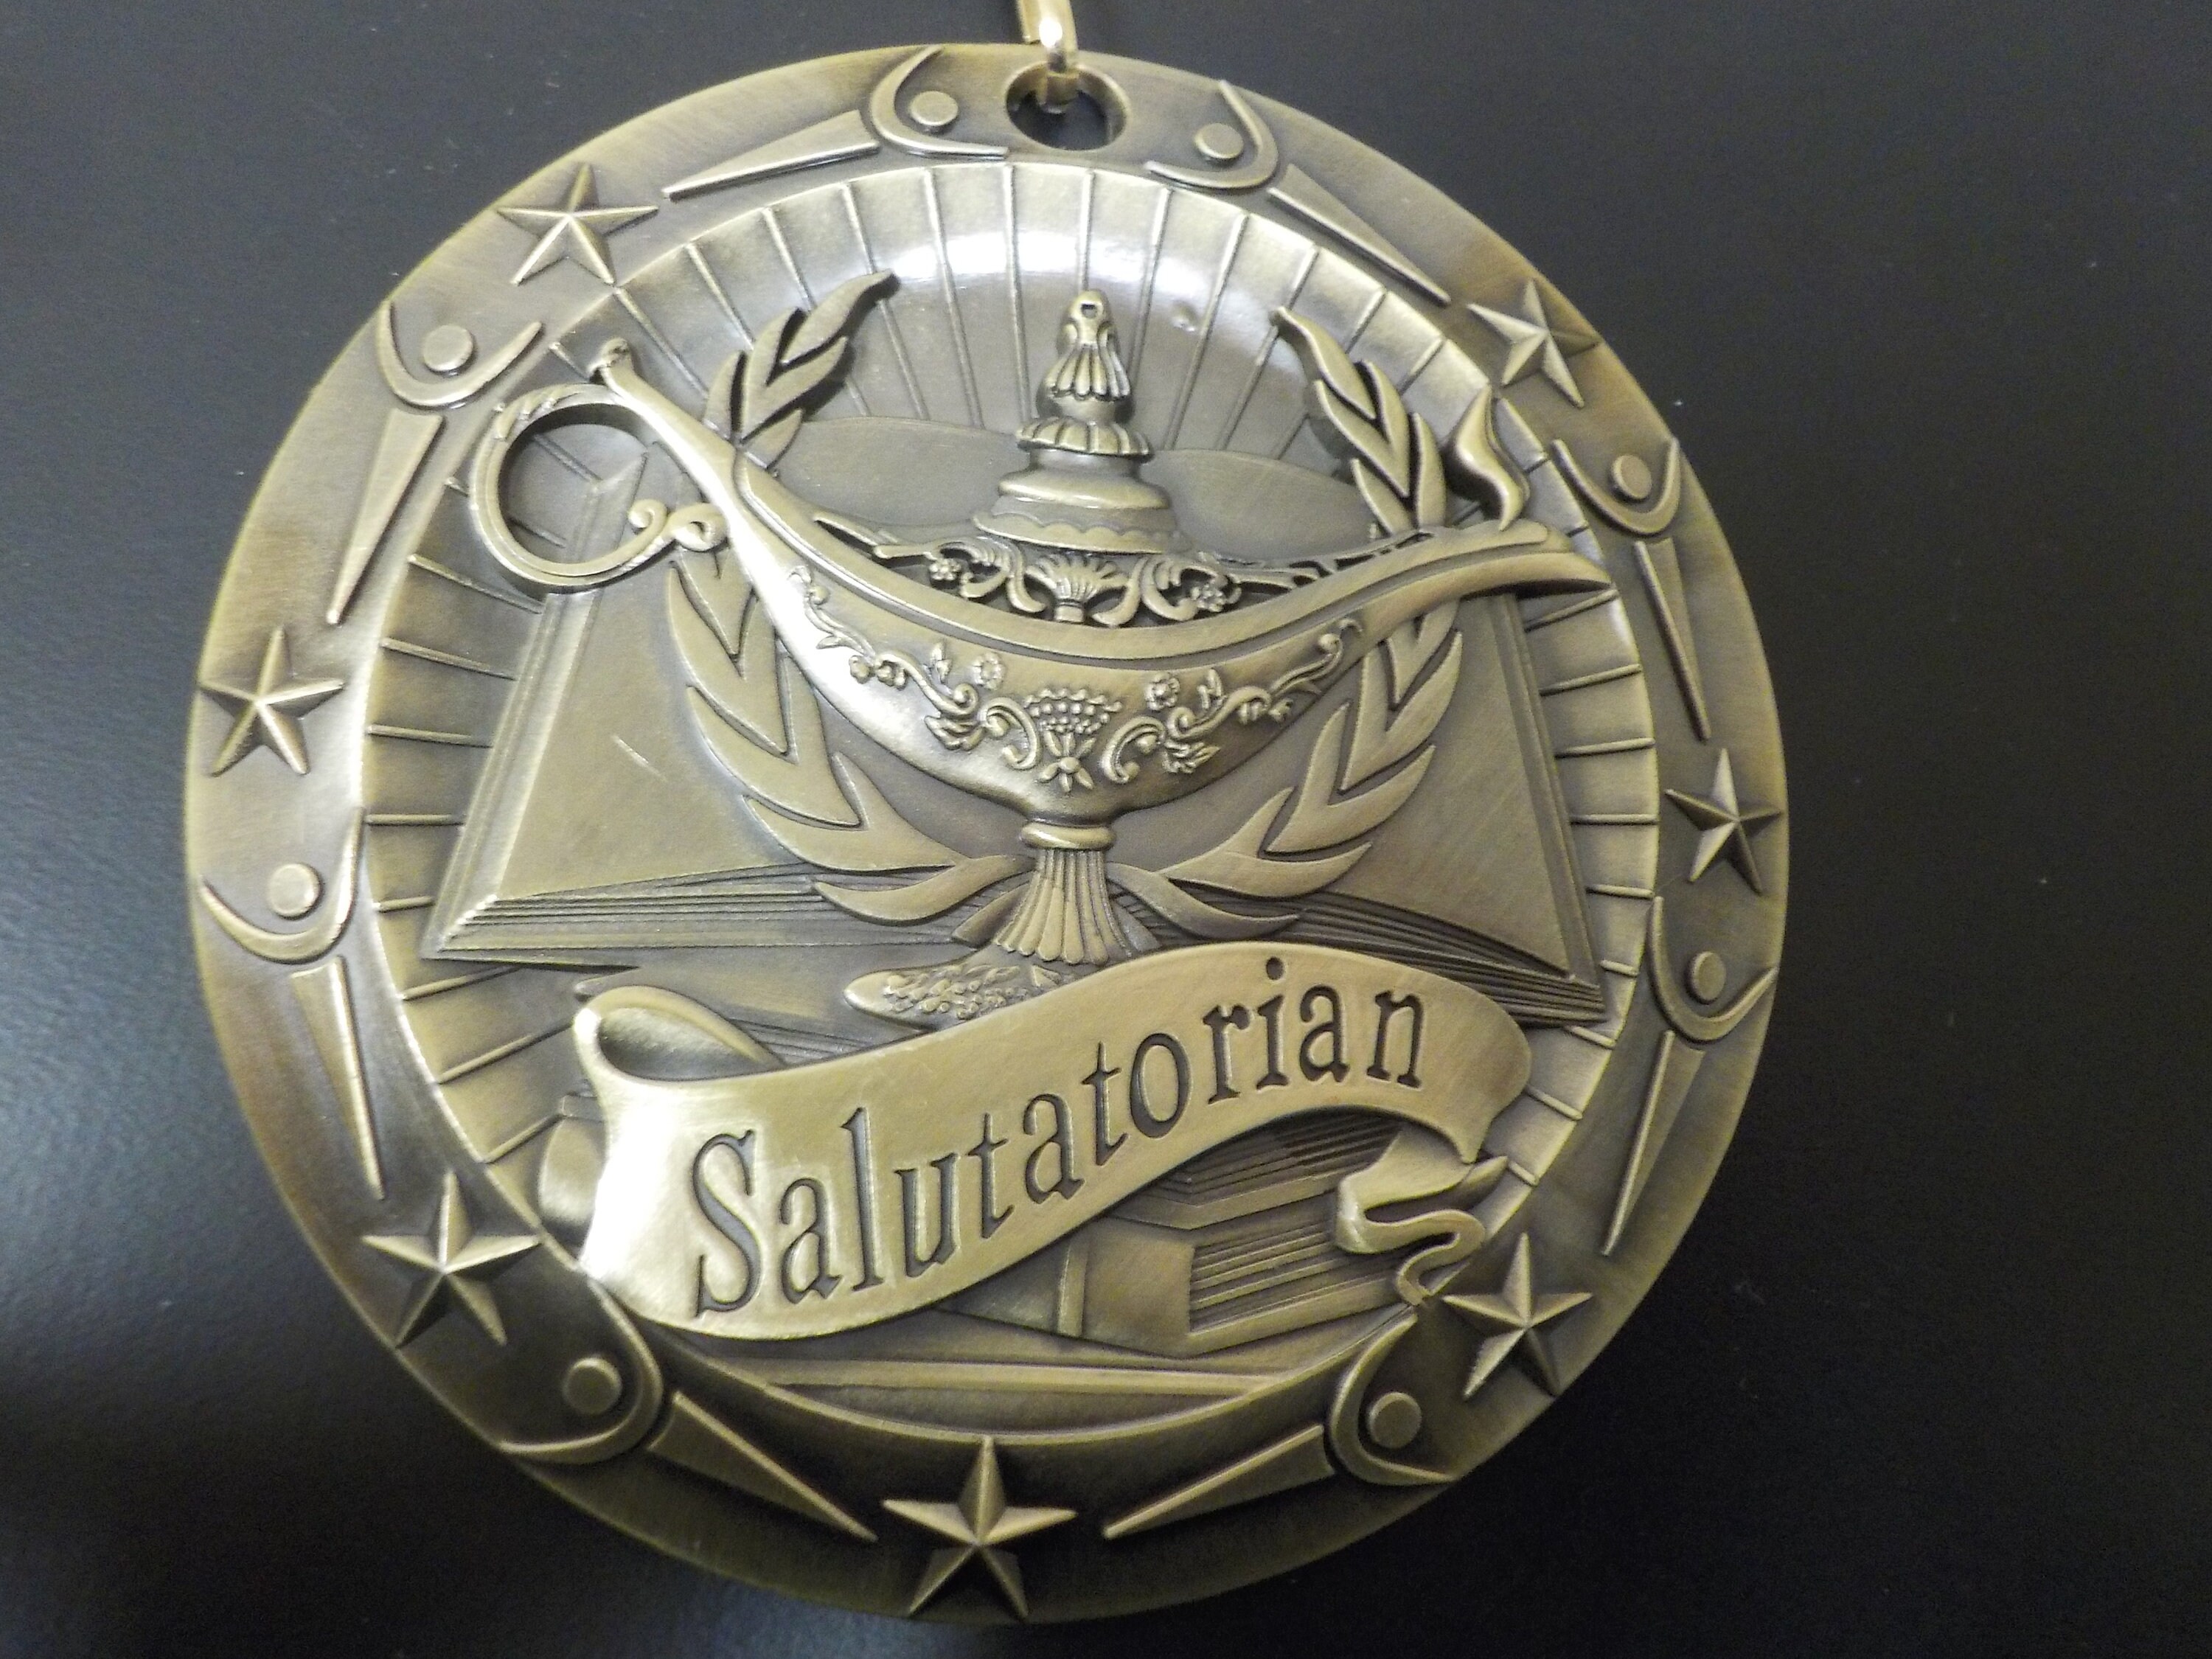  Valedictorian Award Medal on Gold Grossgrain Ribbon